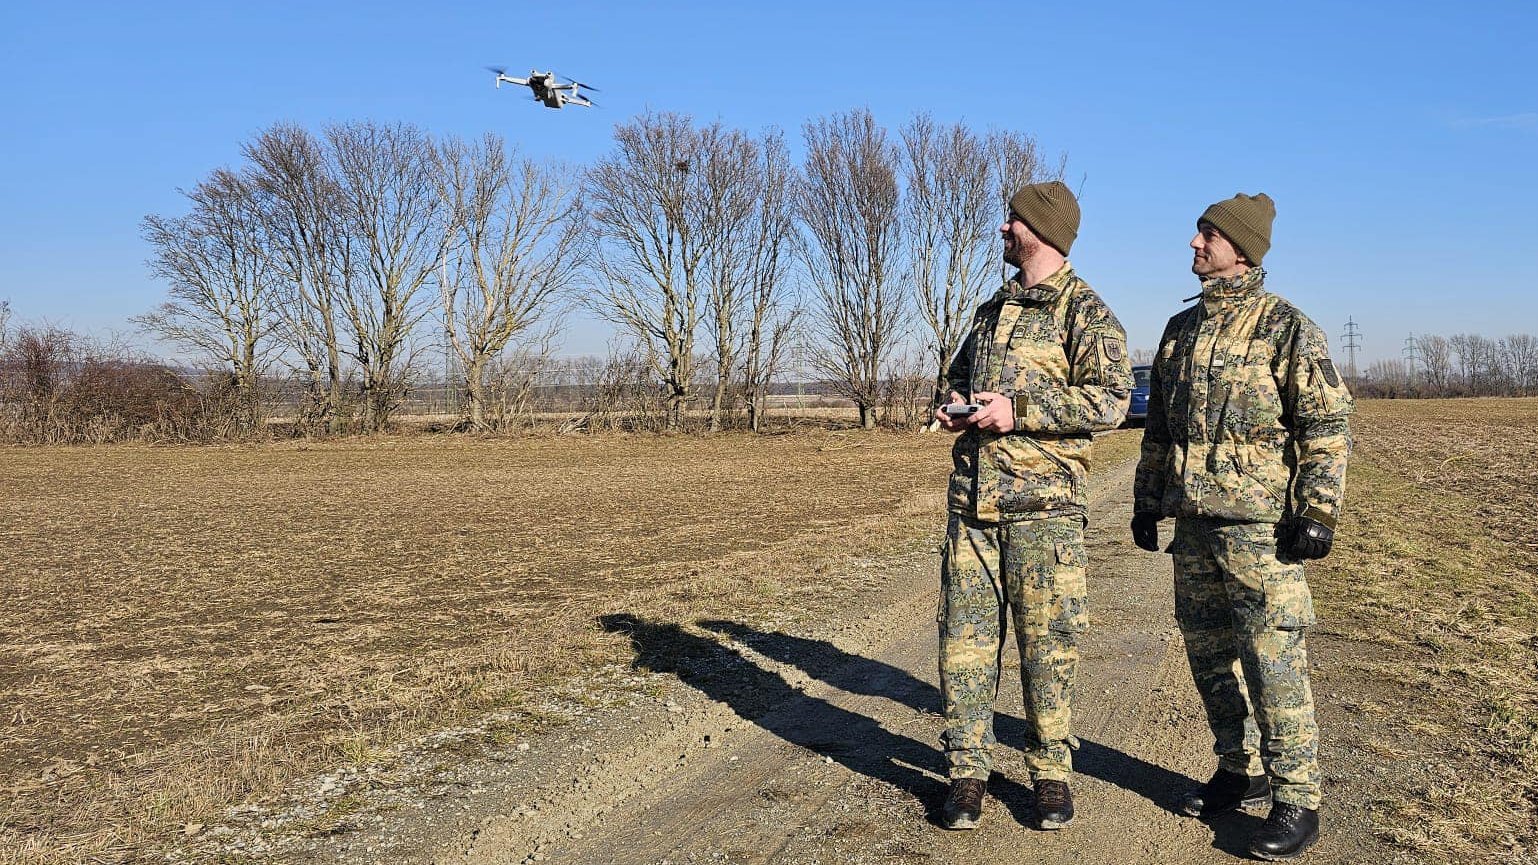 Militärdrohnenbediener trainieren mit kleinen Drohnen.